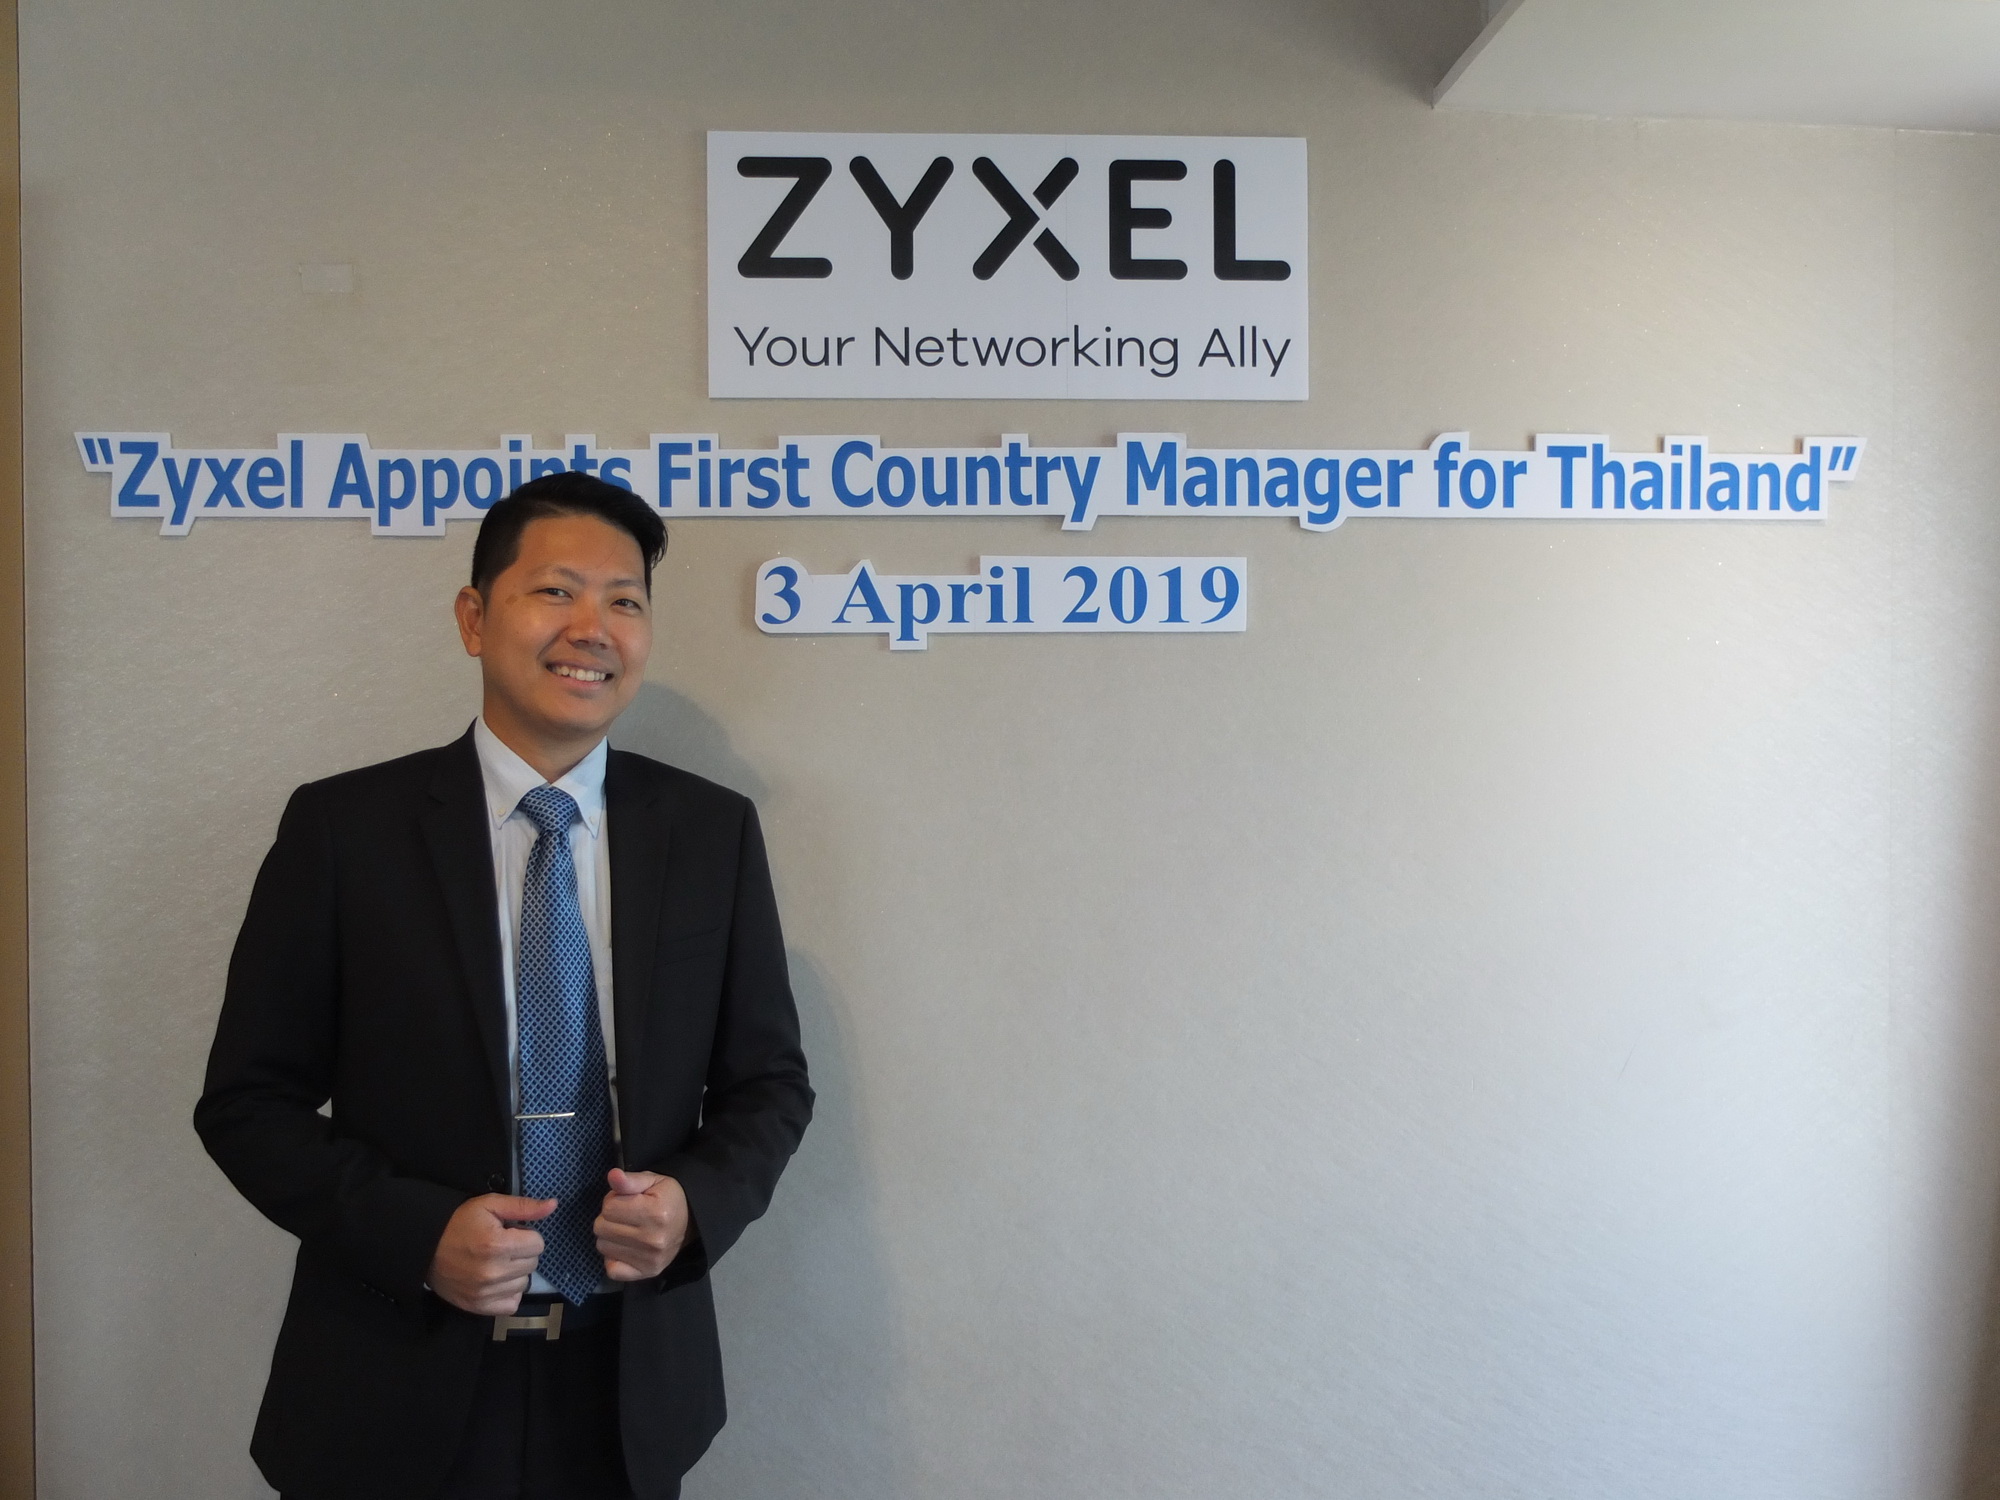 apichart at zyxle 2 ไซเซลประกาศเปิดตัวผู้จัดการประจำประเทศไทยคนแรก